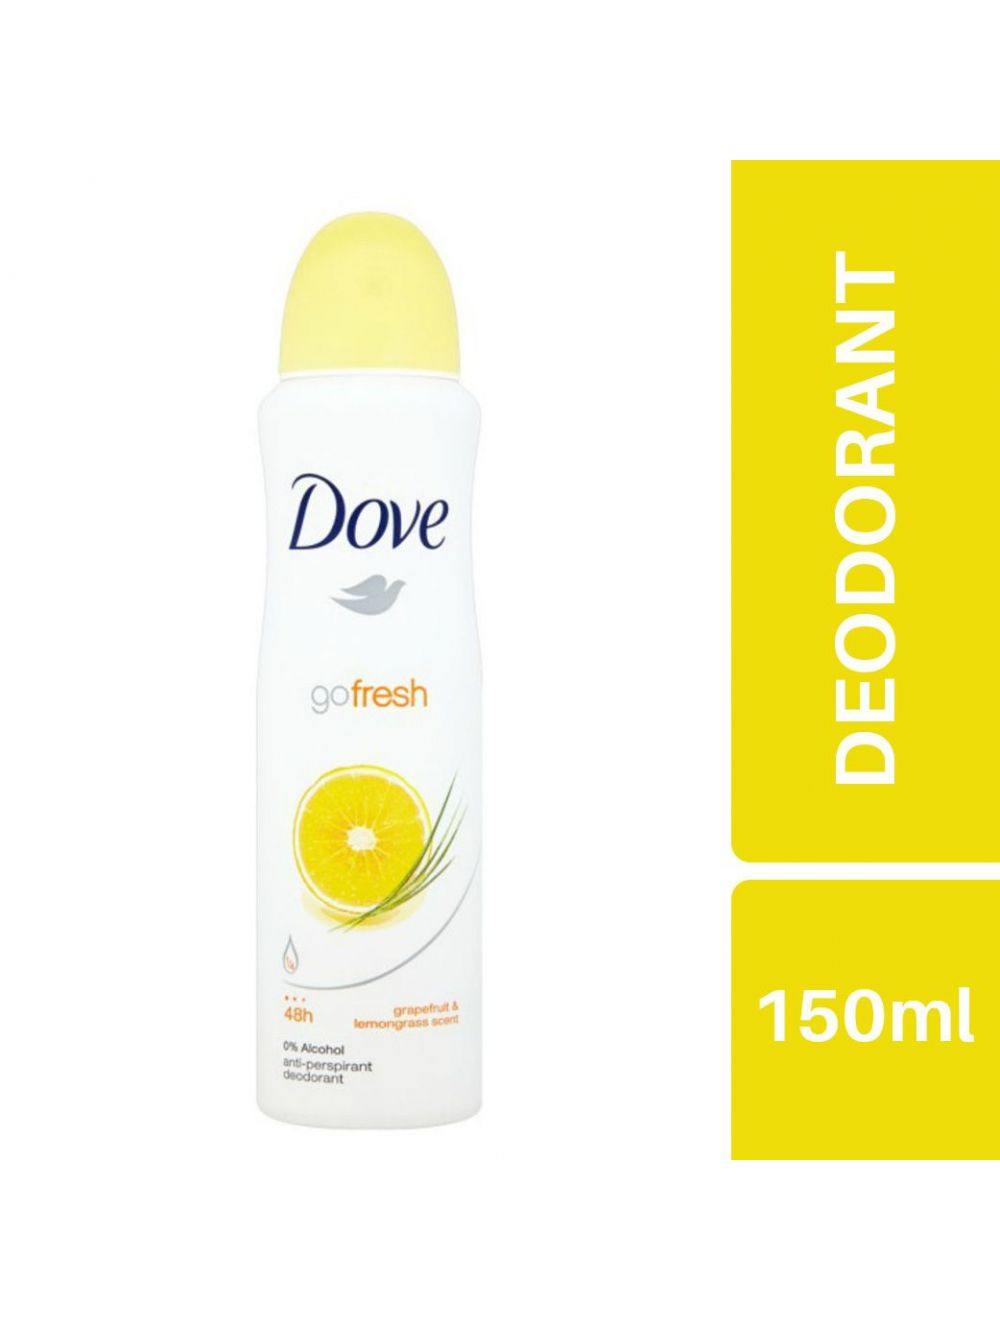 Dove Go Fresh Grapefruit & Lemongrass Deodrant (150ml) - Niram